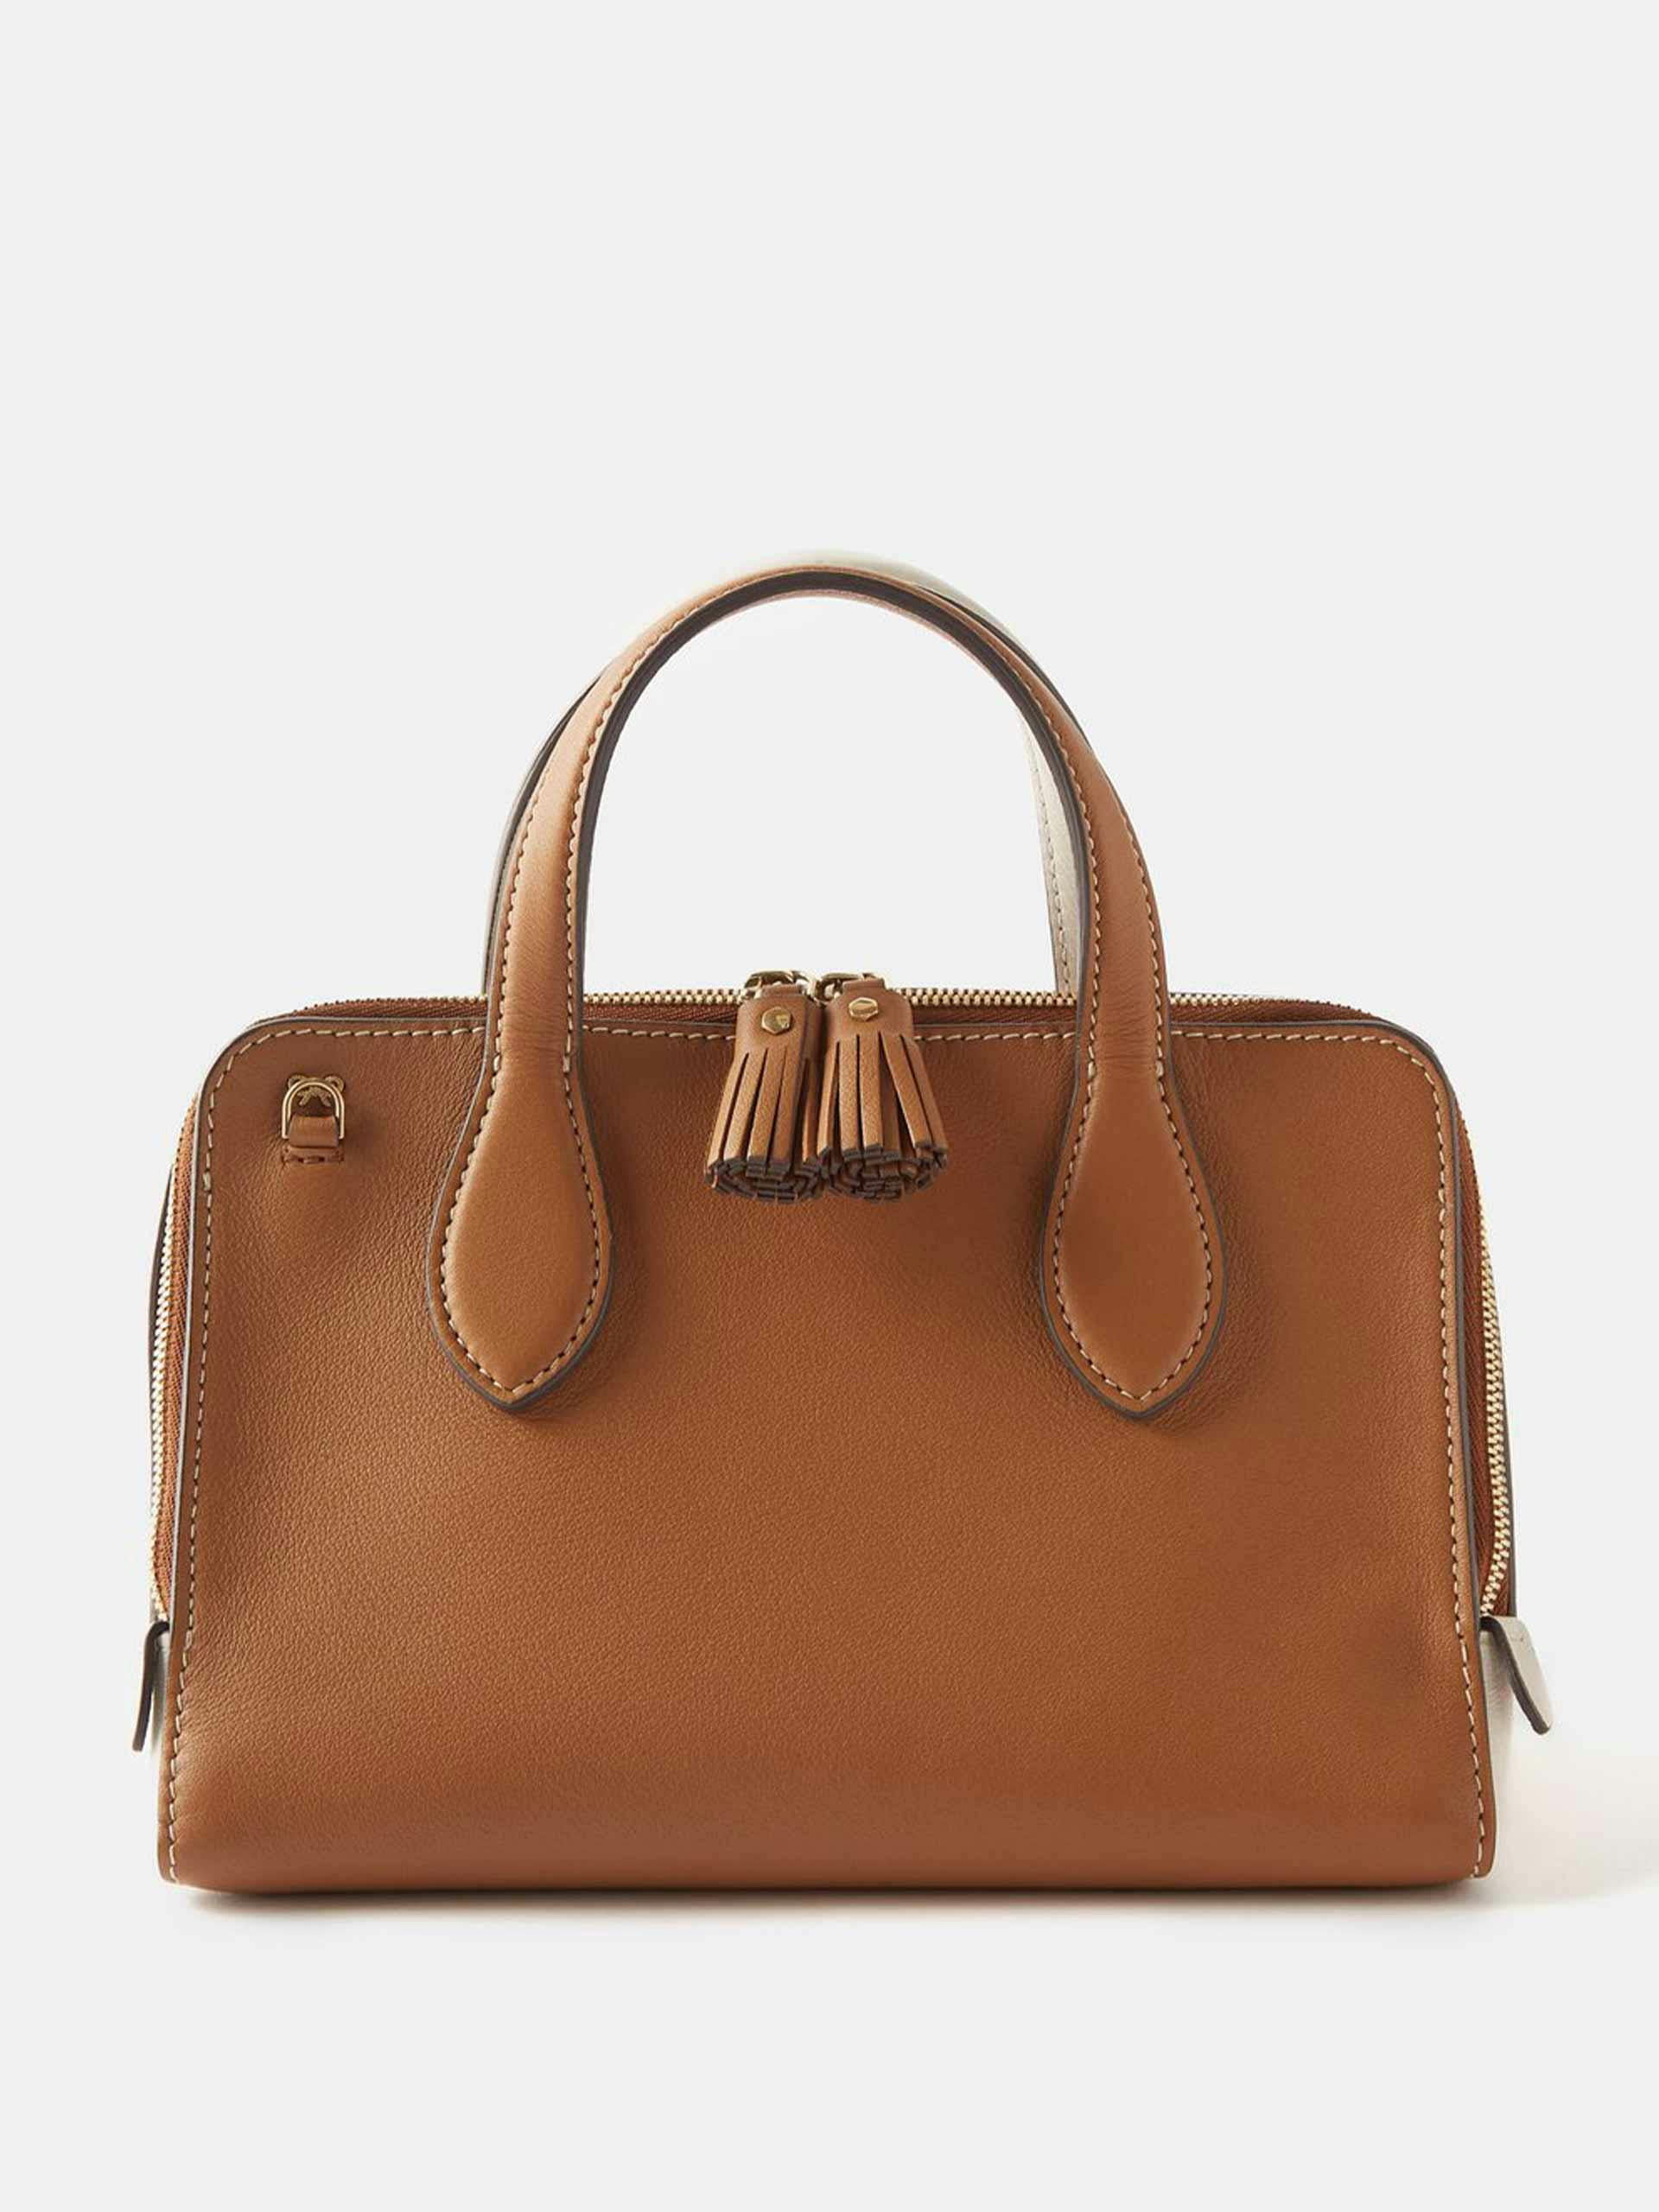 Small top handle leather handbag